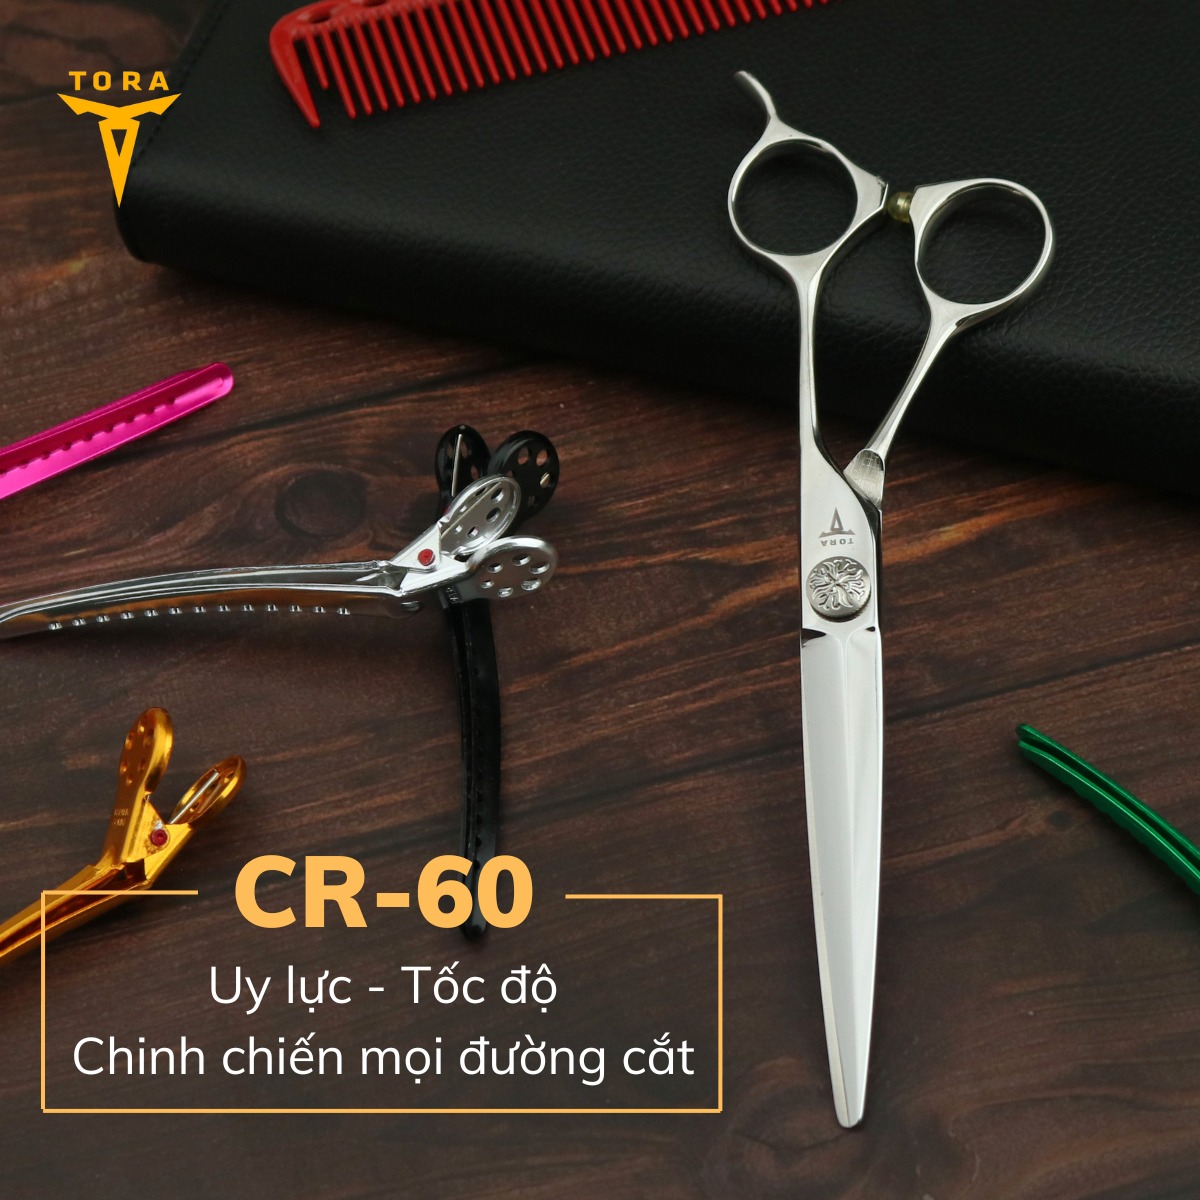 Kéo cắt tóc TORA CR-60 uy lực và tốc độ